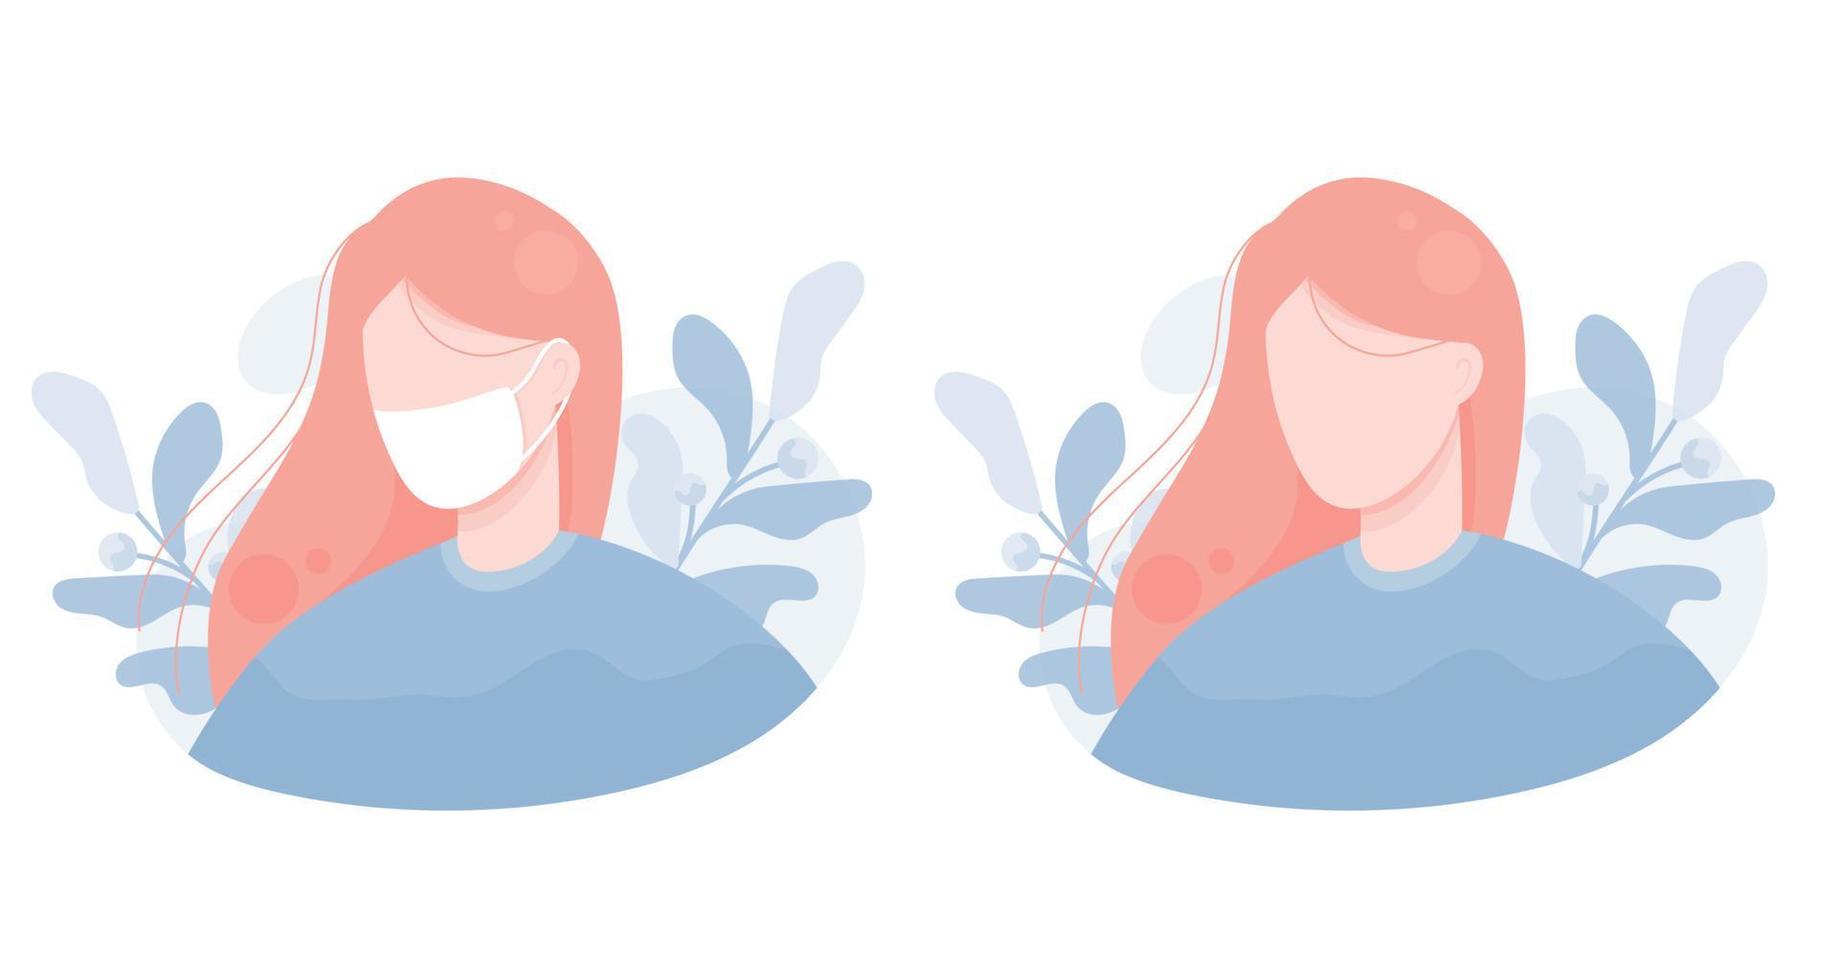 illustratie portret van een meisje met een beschermend masker tegen virussen en bacteriën. coronavirus, ziekte, griep, verkoudheid, covid-19. voor een website, gebruiker, persoon, avatar. achtergrond van bladeren. blauw roze. eps 10 vector